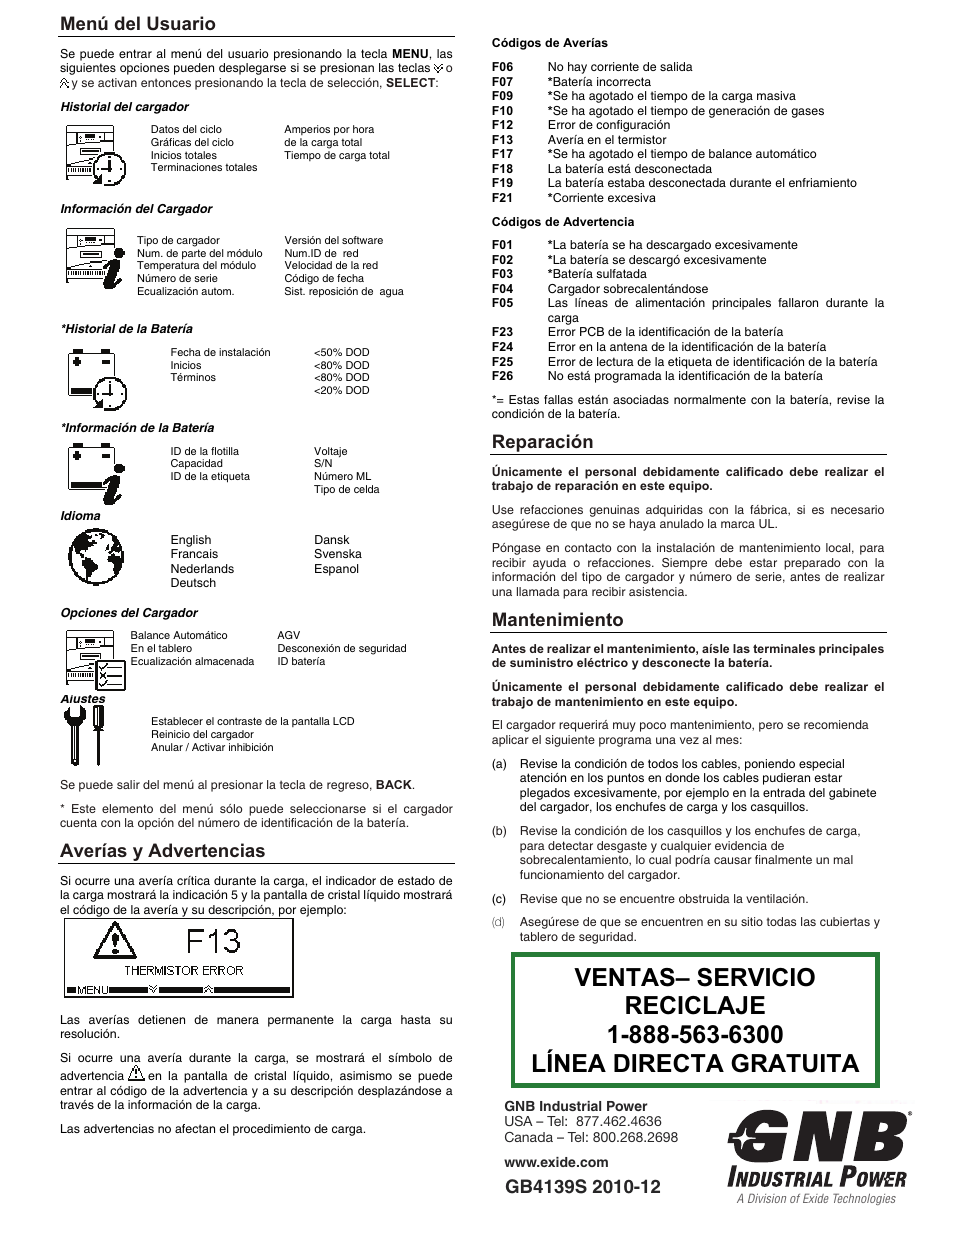 Menú usuario, Averías Reparación | Technologies GB4139S Manual del usuario | Página 3 / 3